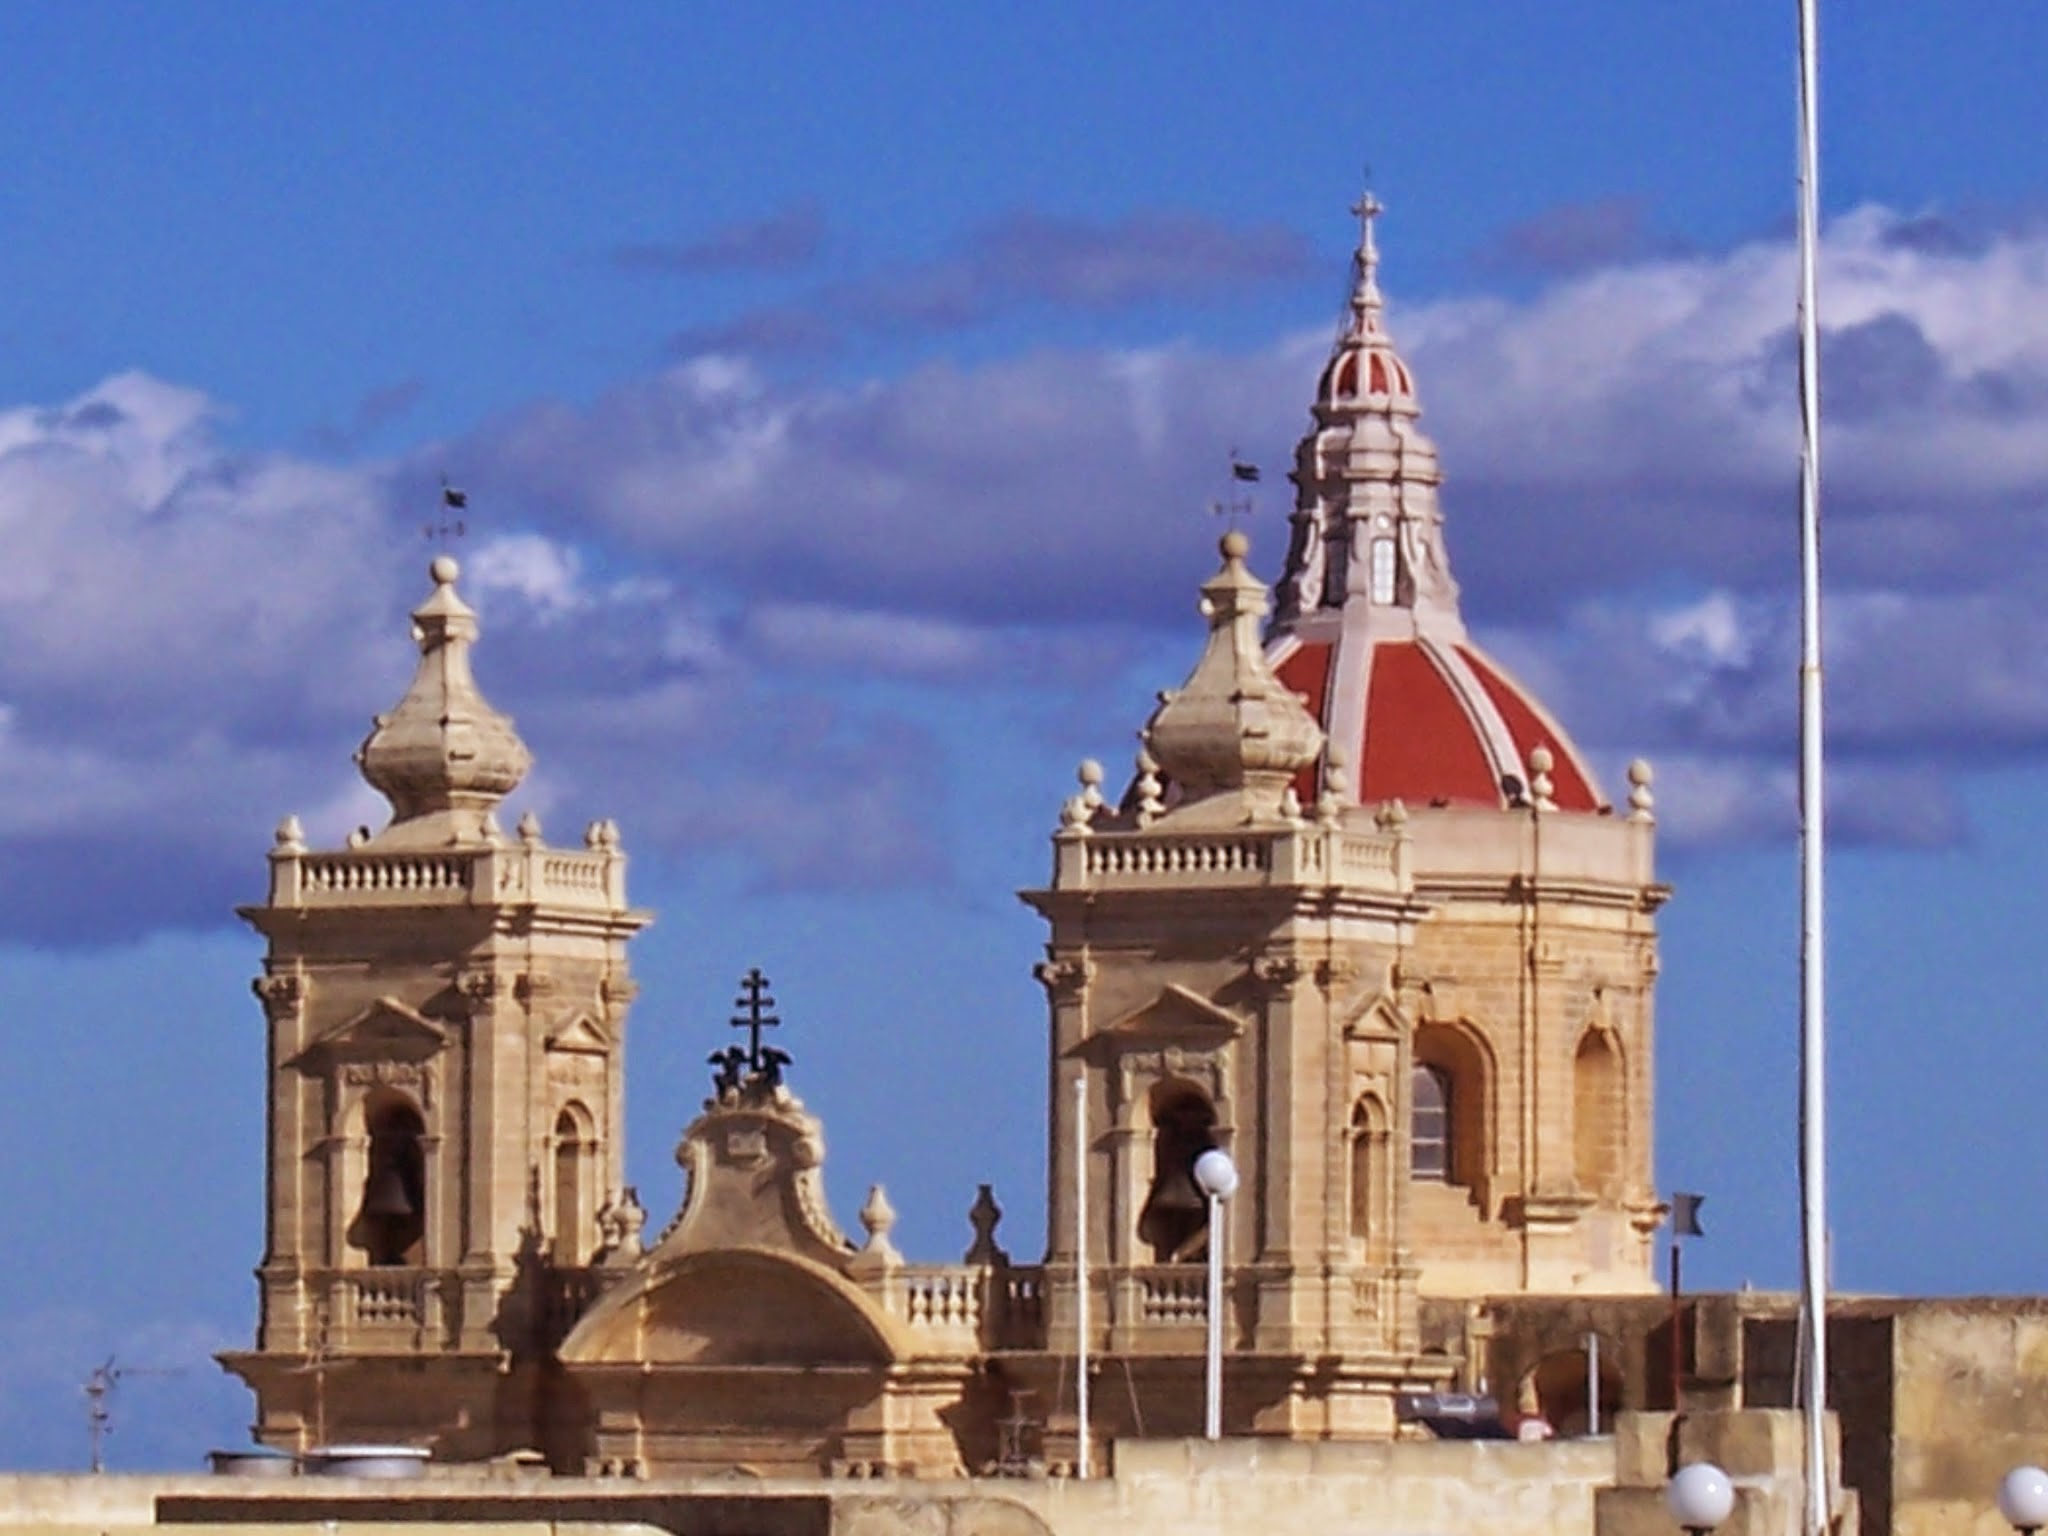 Basilicata of Xagħra